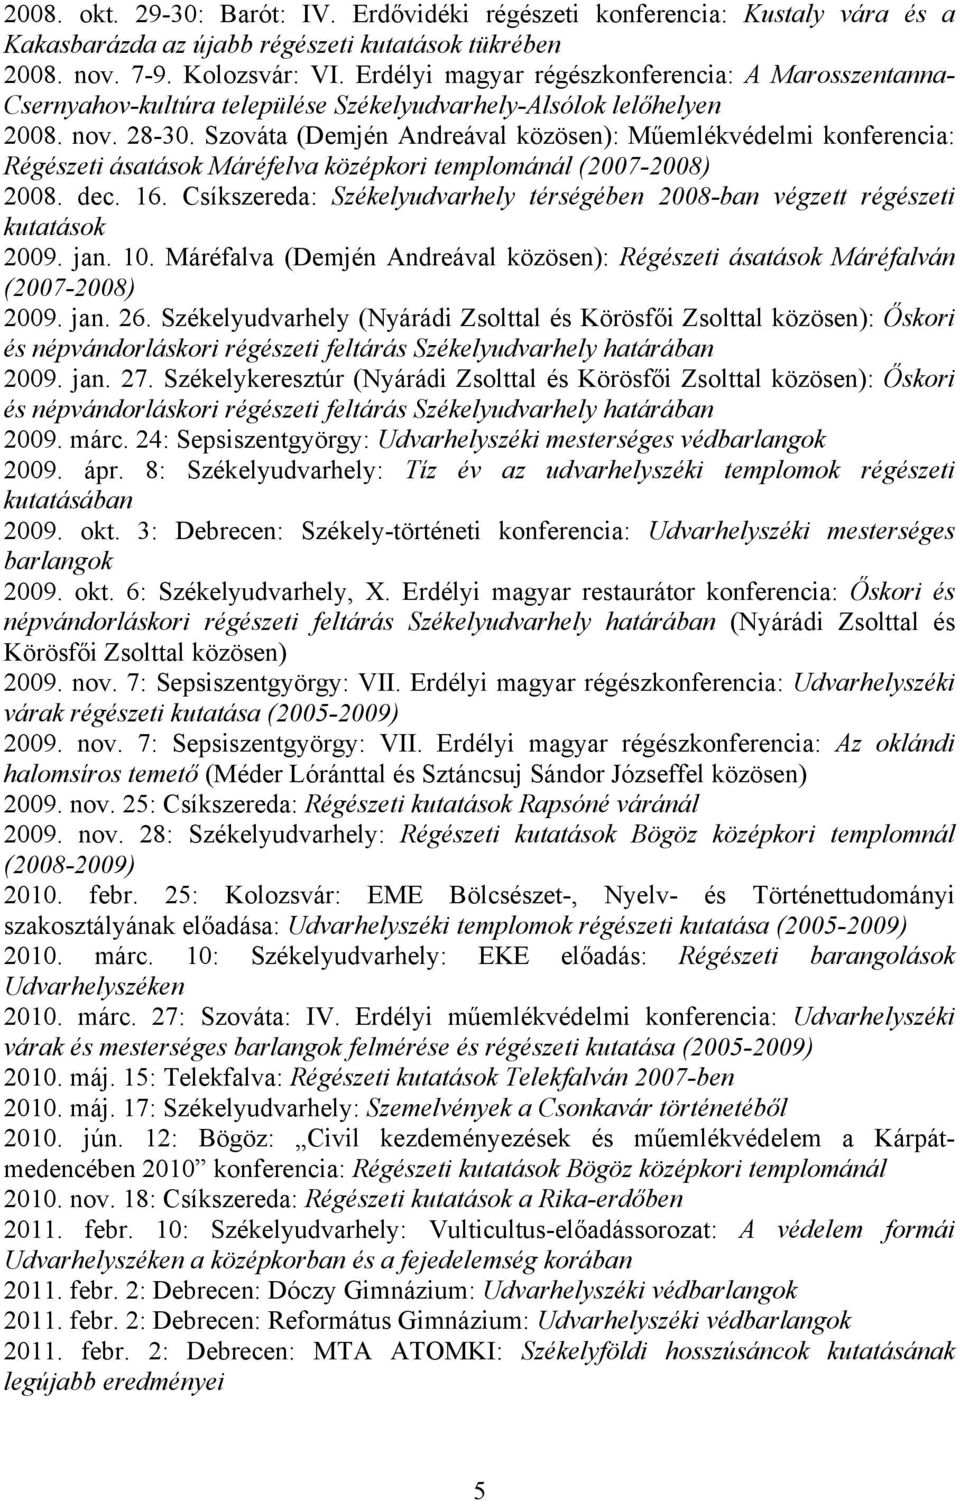 Szováta (Demjén Andreával közösen): Műemlékvédelmi konferencia: Régészeti ásatások Máréfelva középkori templománál (2007-2008) 2008. dec. 16.